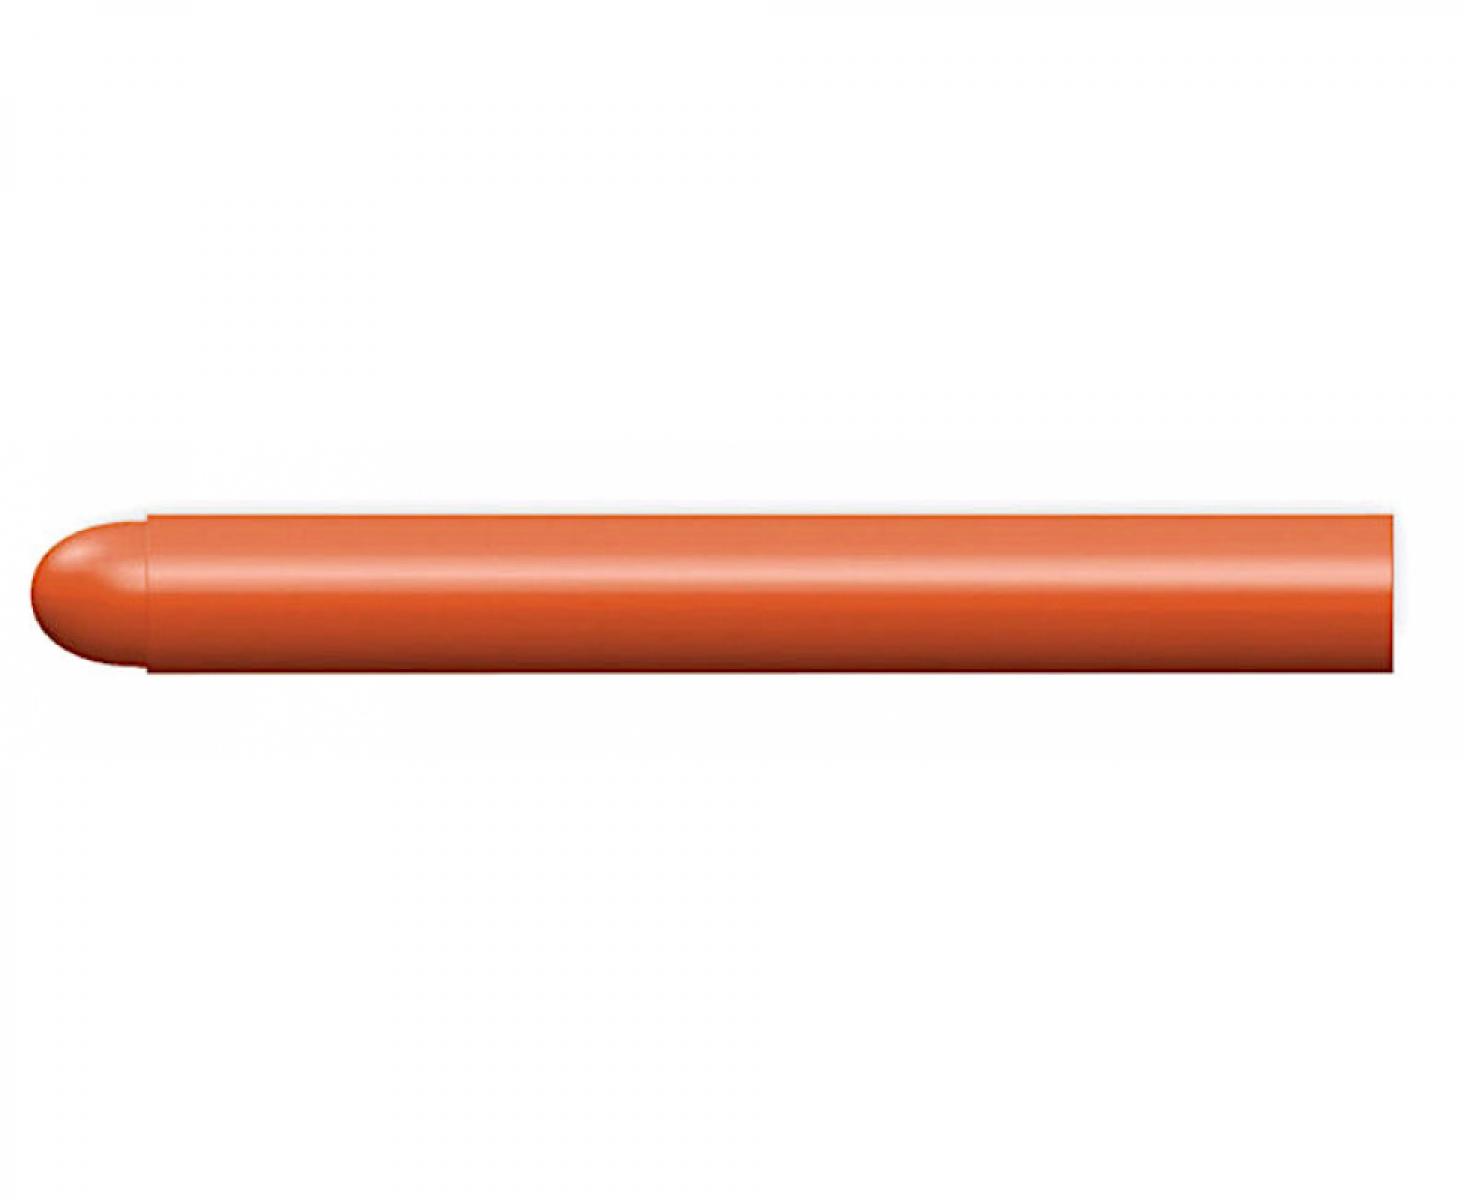 картинка Стержни сменные для Pica-Visor оранжевые 991/054 4 шт. от магазина "Элит-инструмент"